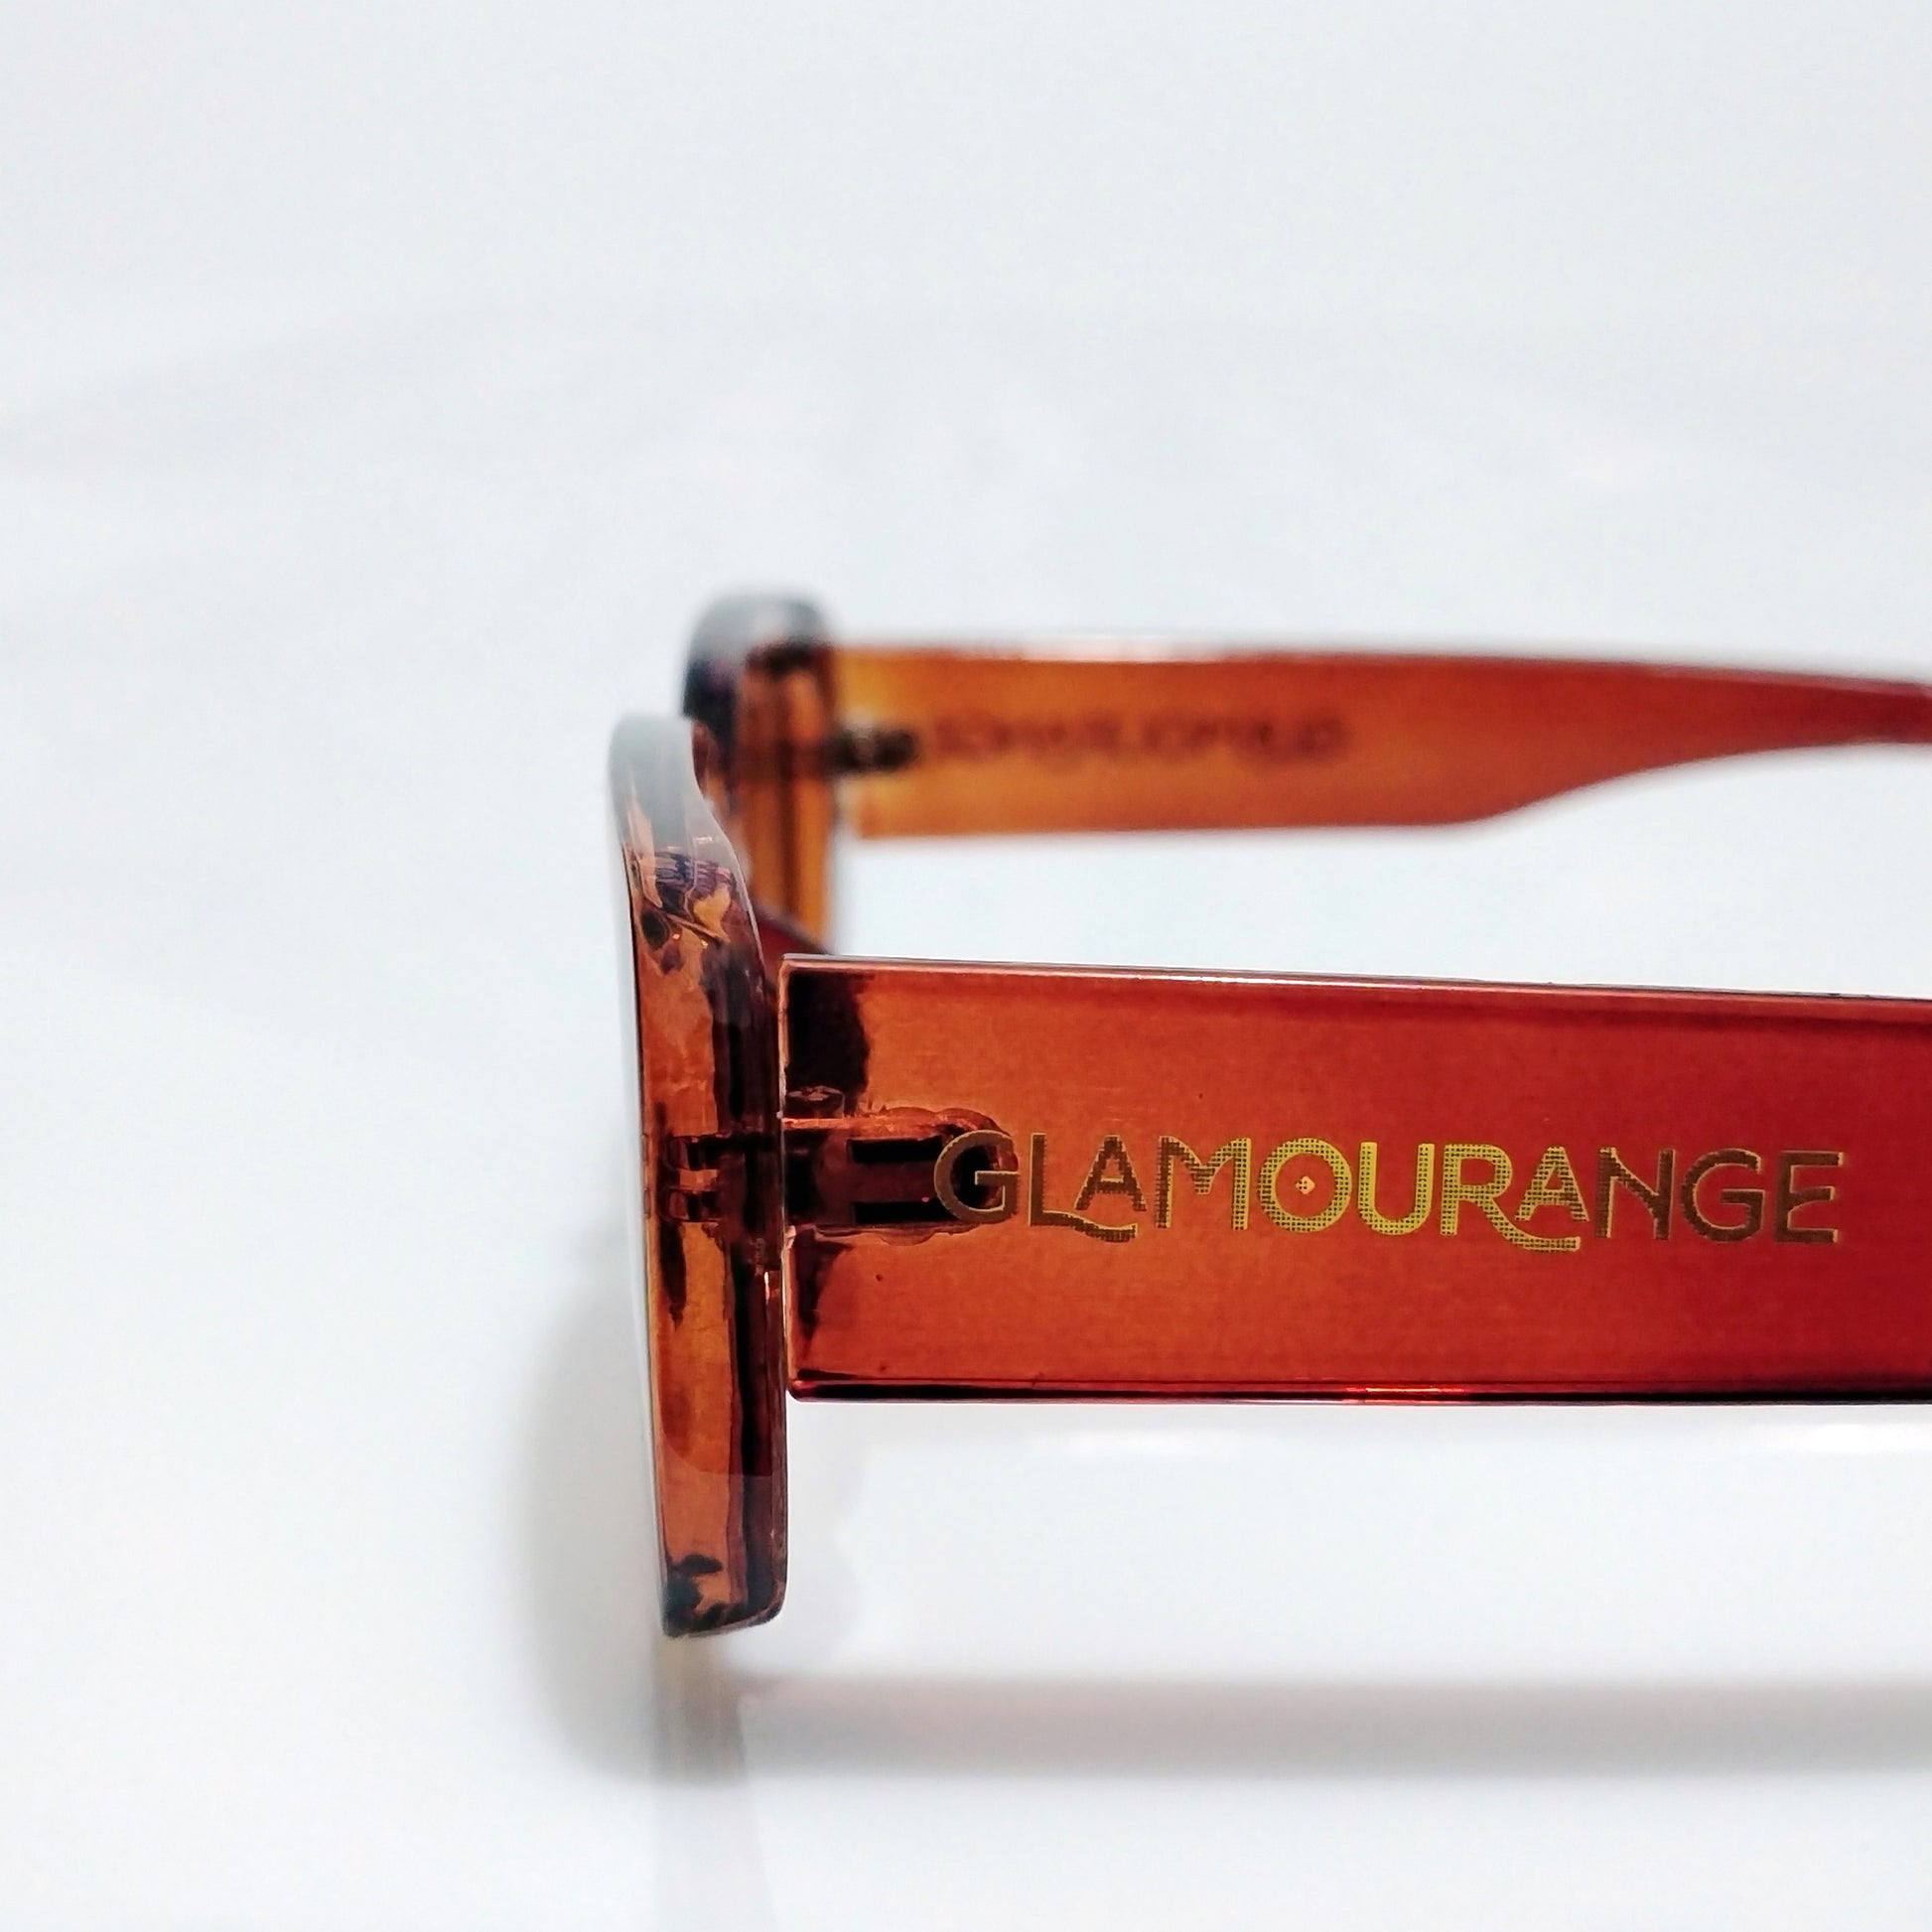 Glamourange Sunglasses Model GR-1005 C5